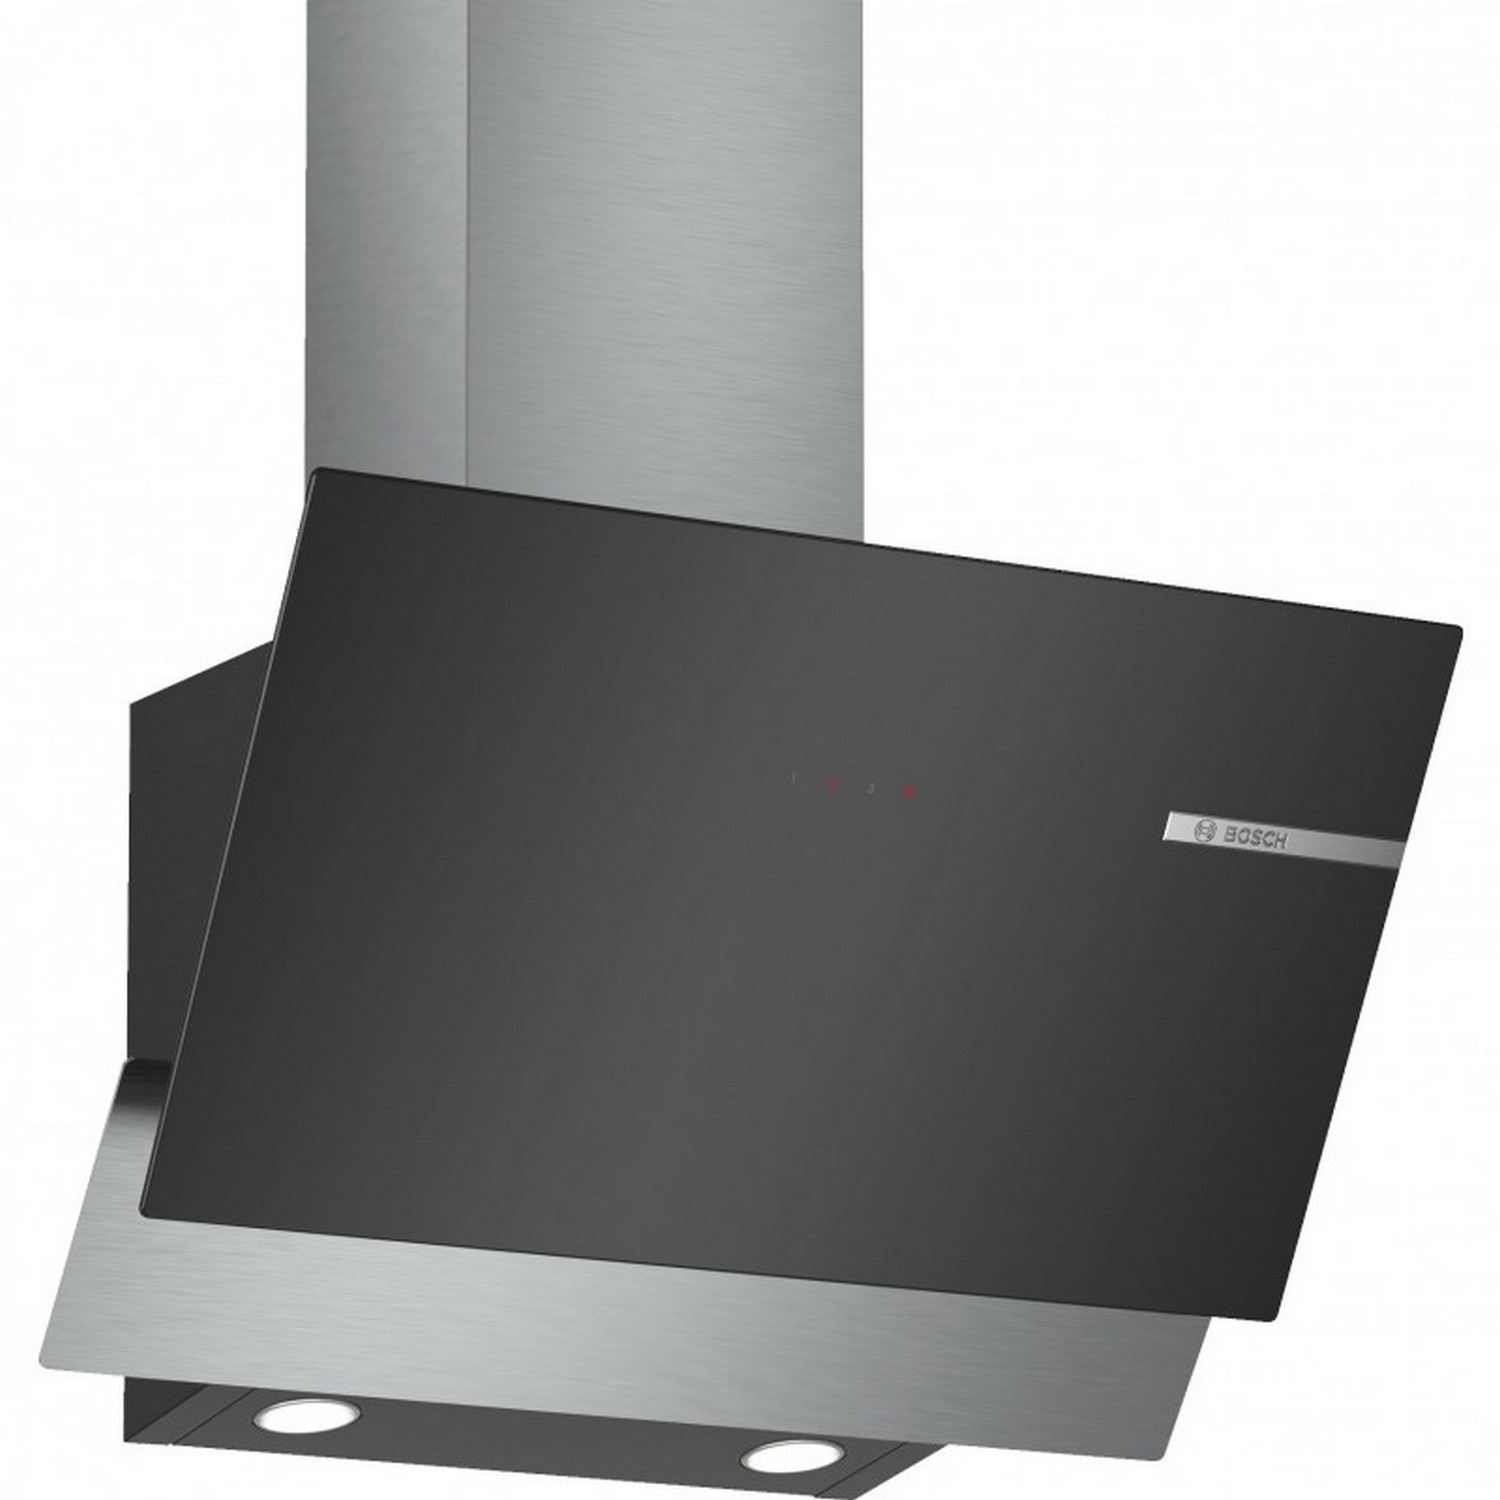 Характеристики вытяжка с сенсорным управлением Bosch DWK66AJ60T